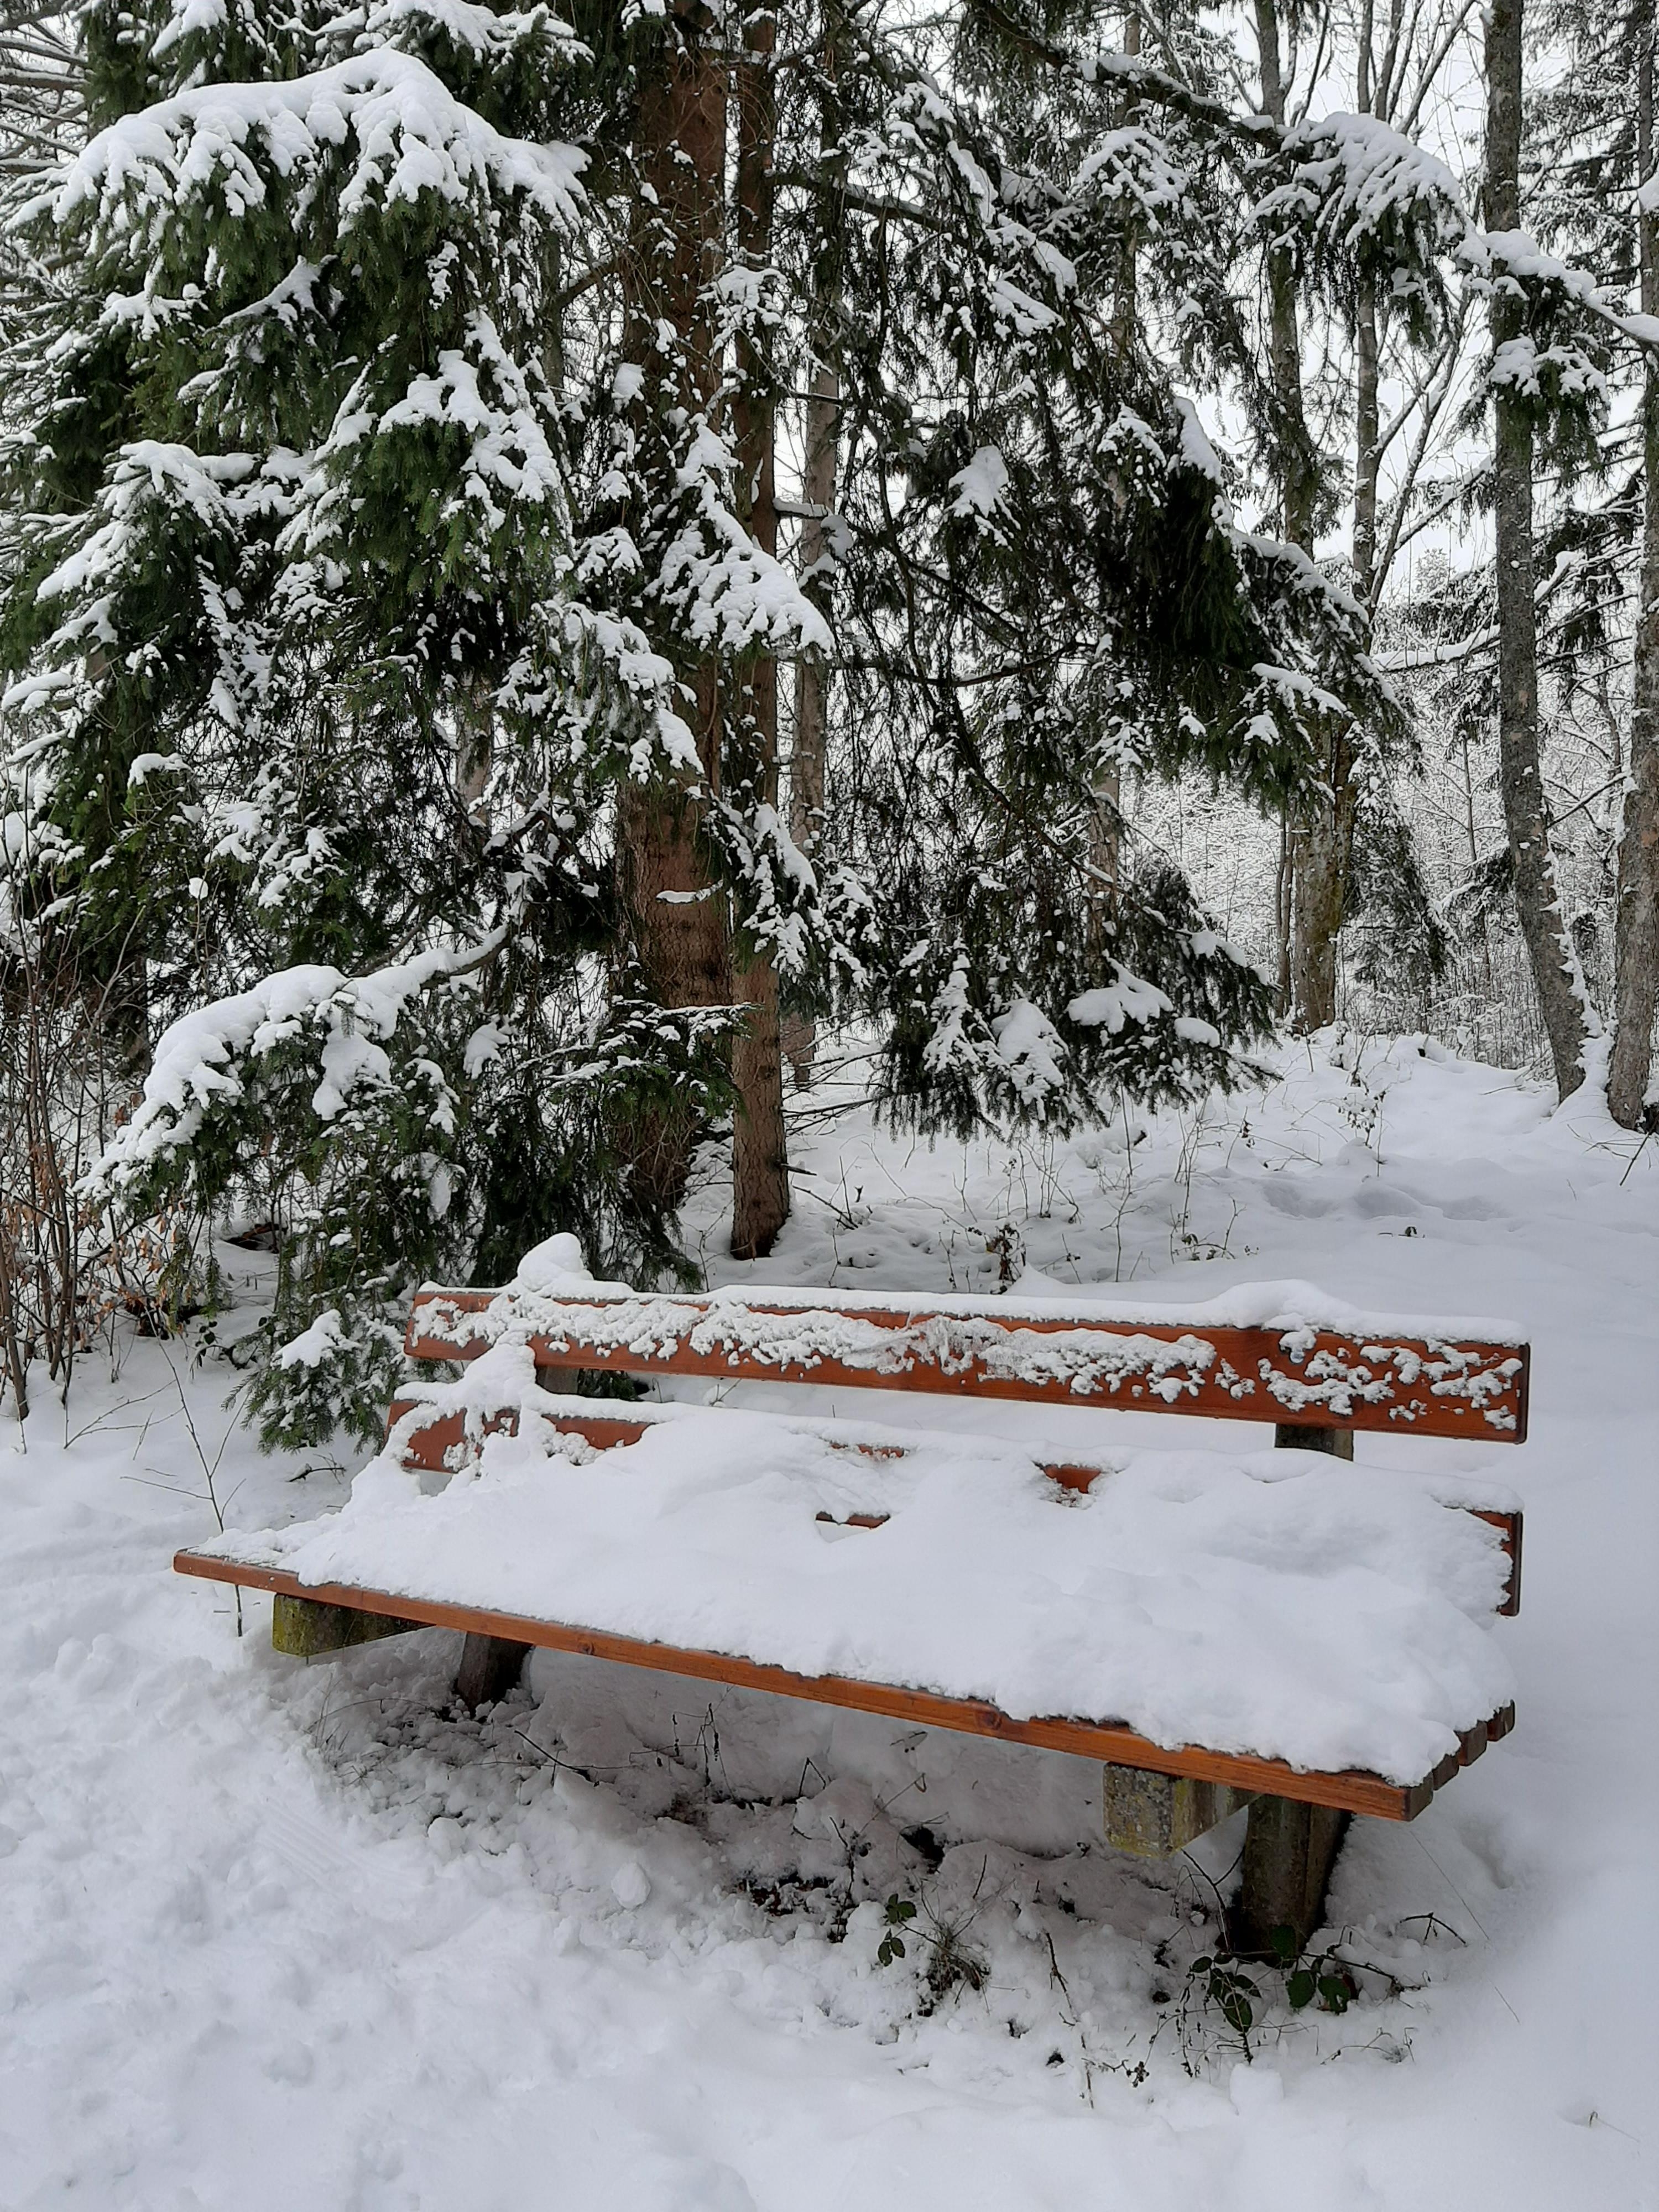 Winter im Schwarzwald 
#Wald #Winterwonderland #Schnee
#Natur #Bank